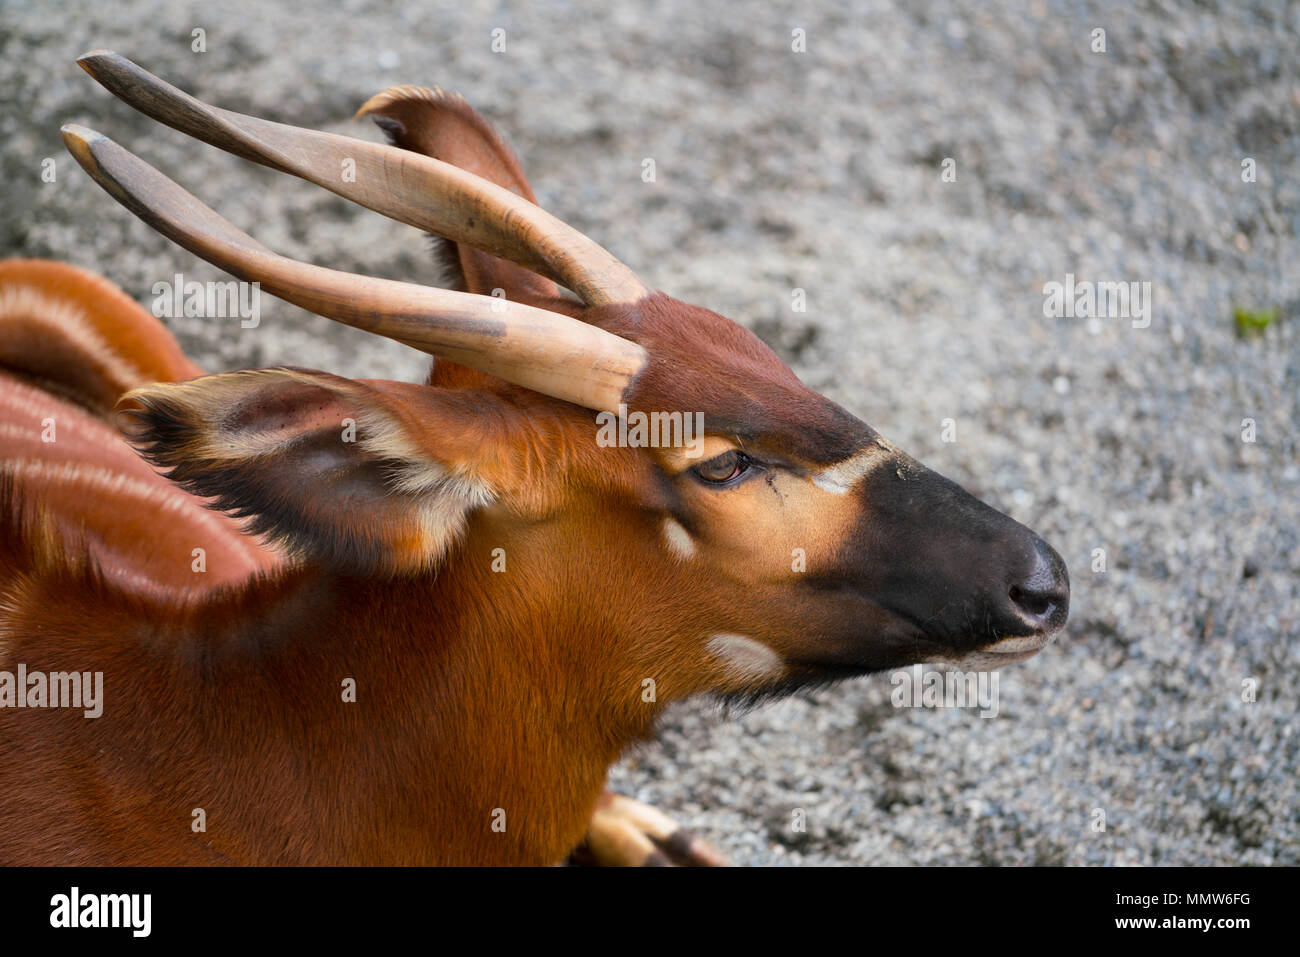 African bongo antelope tragelaphus eurycerus sitting on the ground close-up Stock Photo